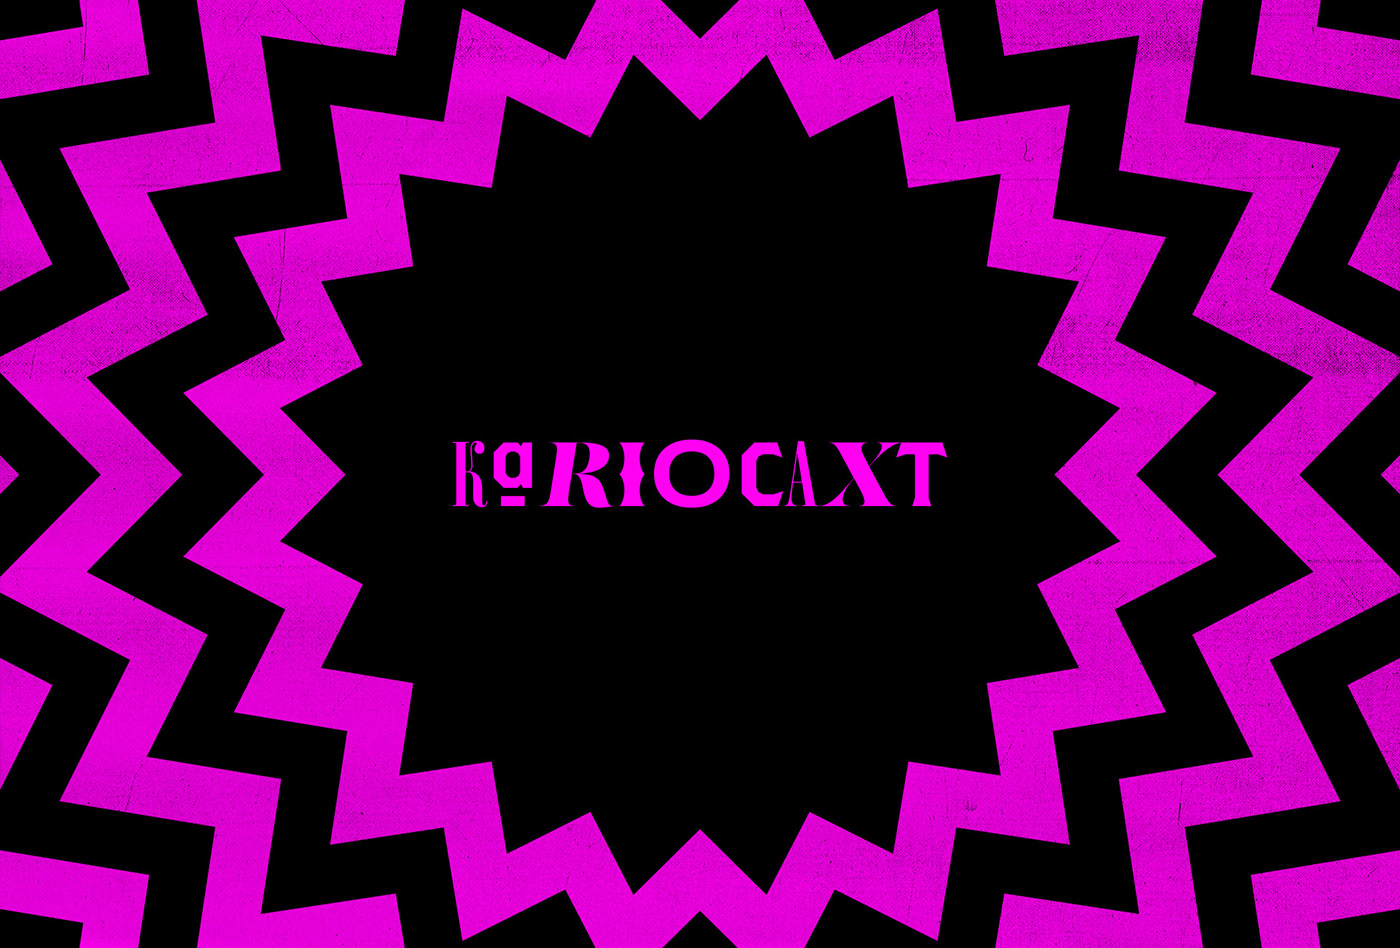 Tipografia e ícones que fazem parte da identidade visual criada para o podcast Kariocaxt 